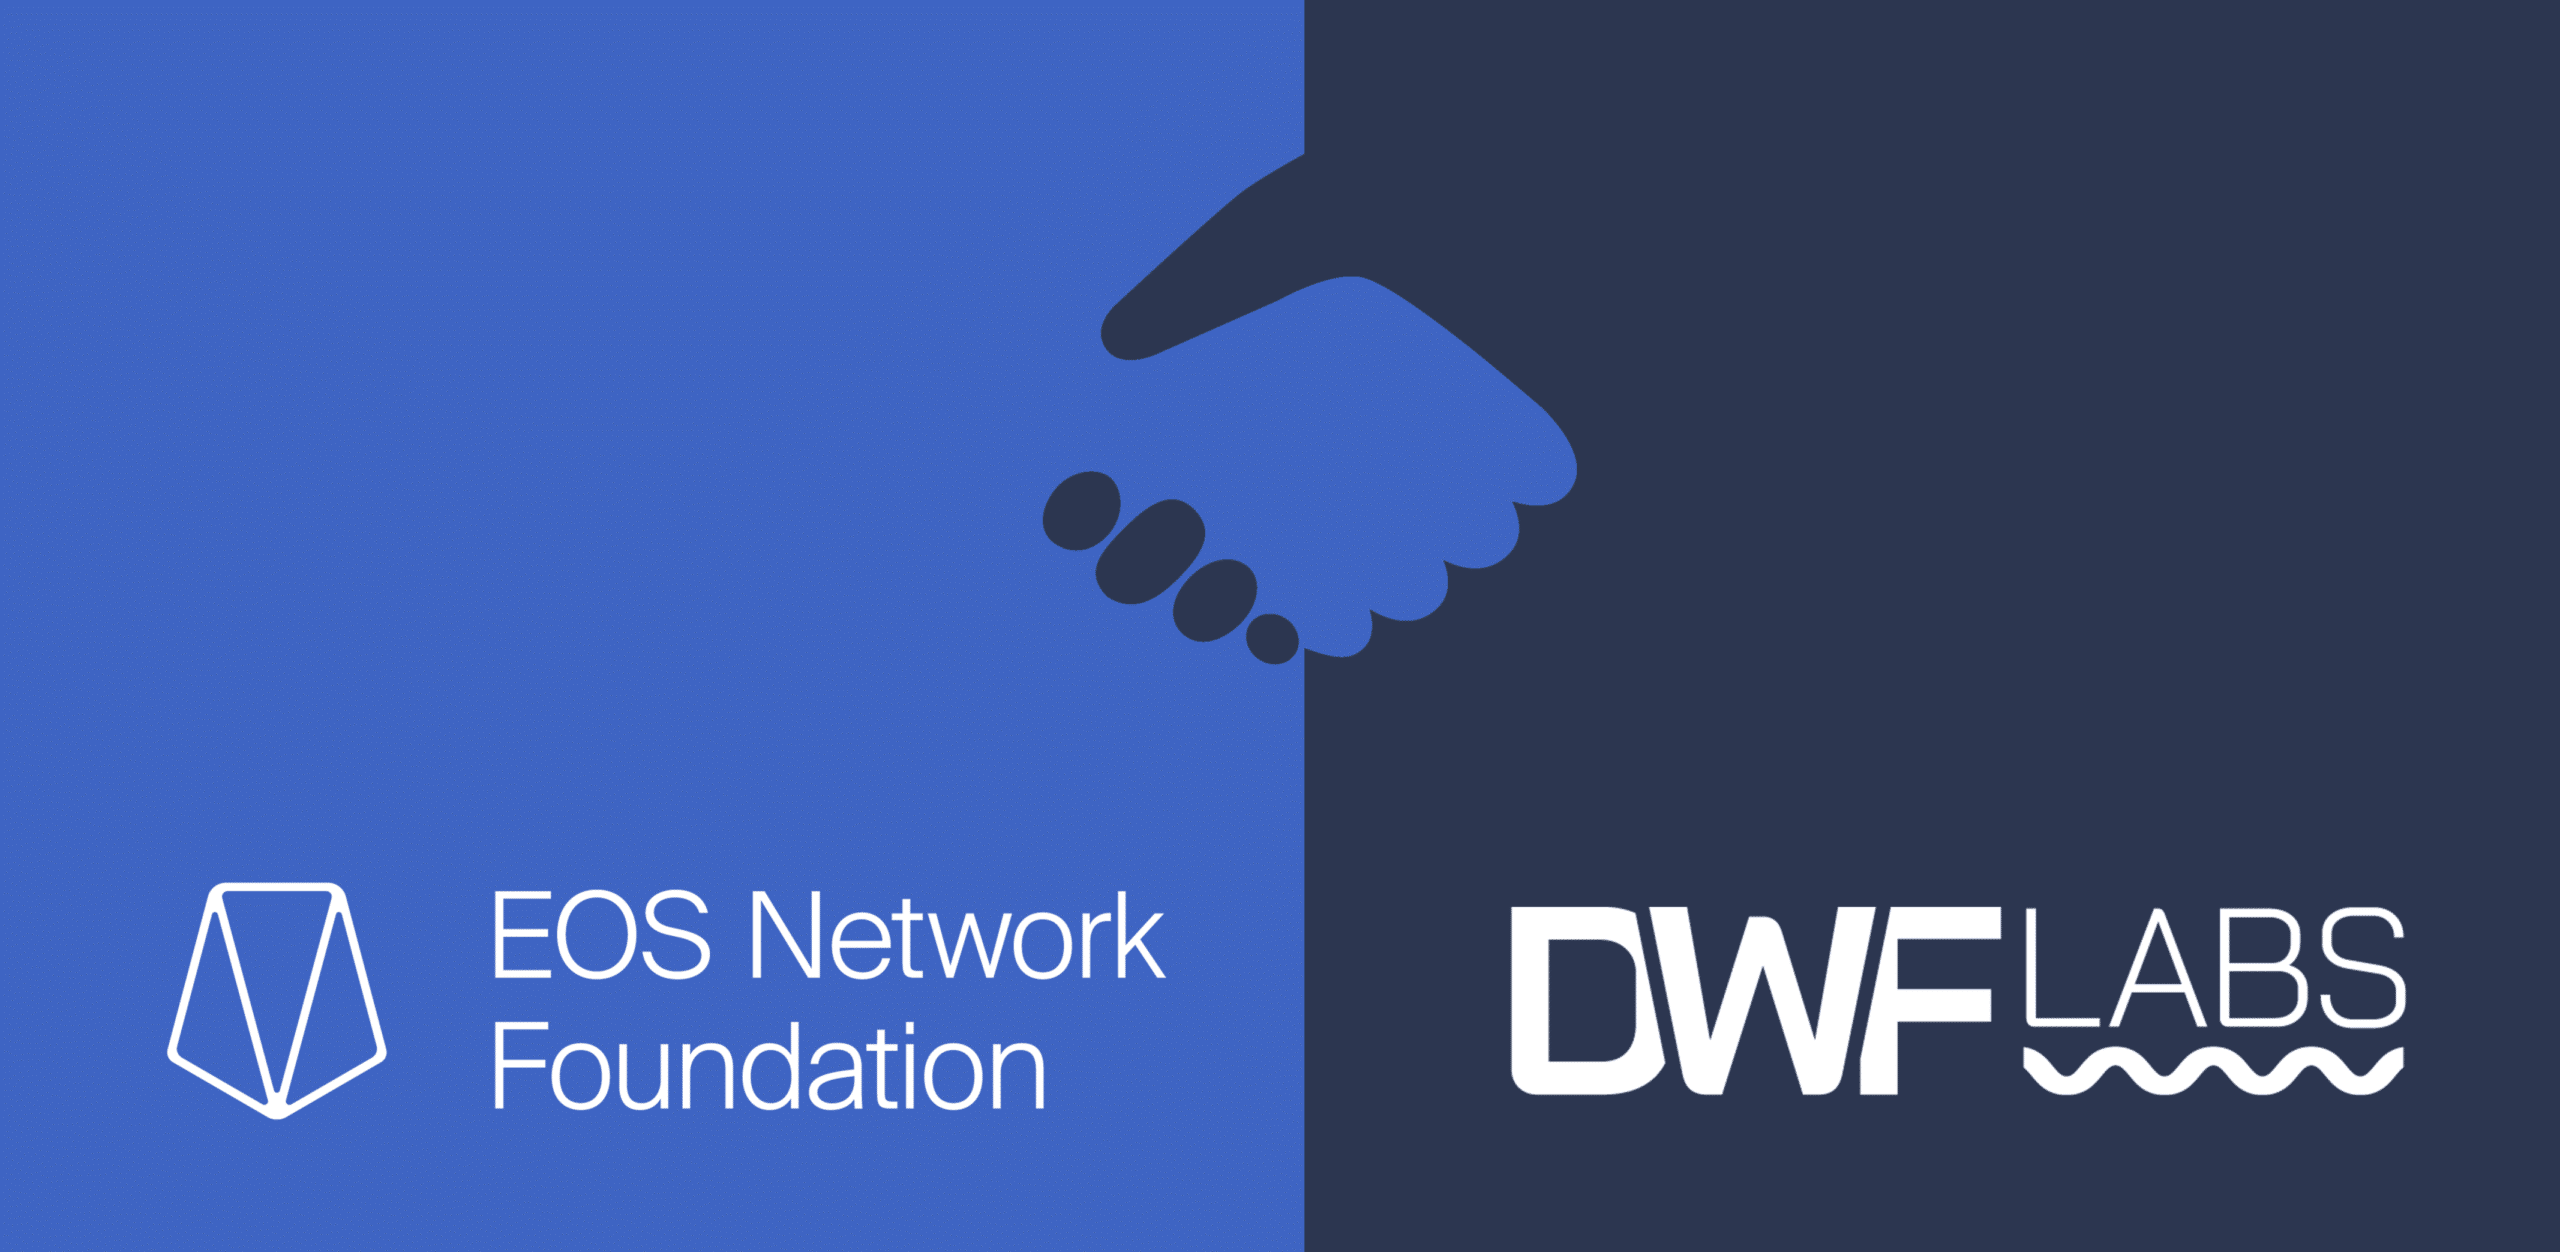 DWF Labs 宣布与 EOS 网络基金会建立 6000 万美元的战略合作伙伴关系